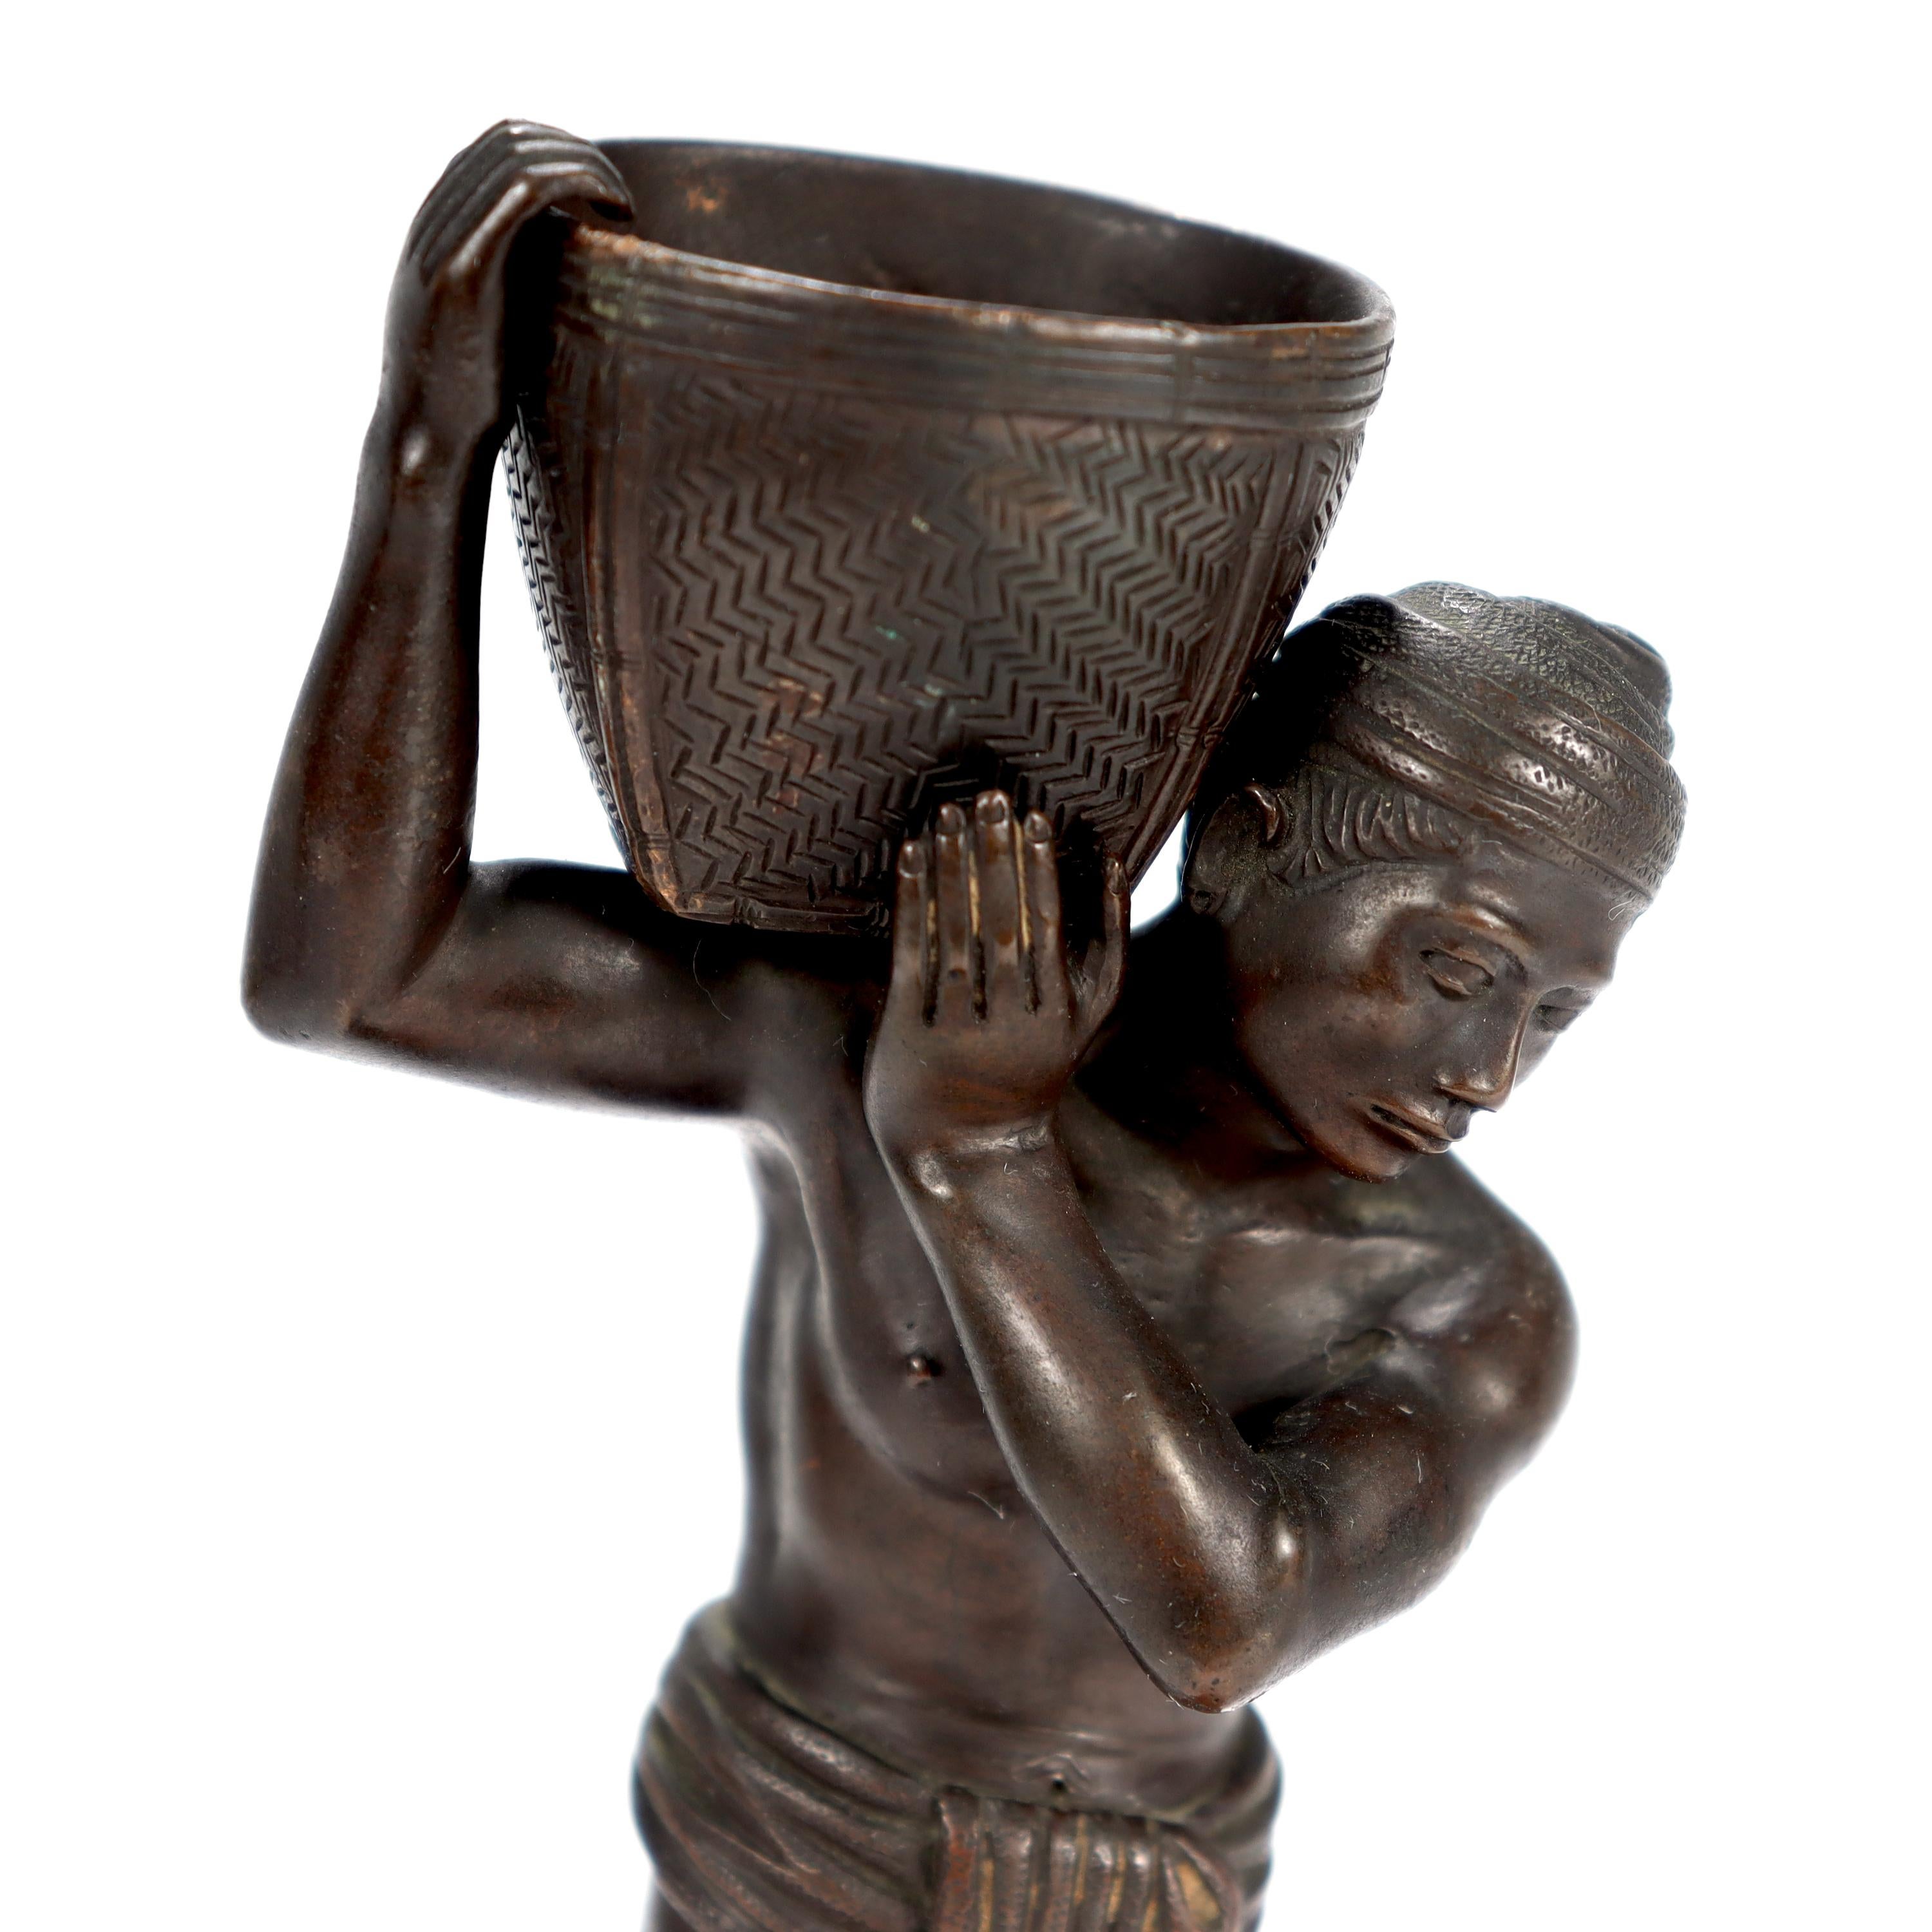 Old or Antique Pegu Burmese Bronze Statue of Man Carrying Basket on Shoulder 2